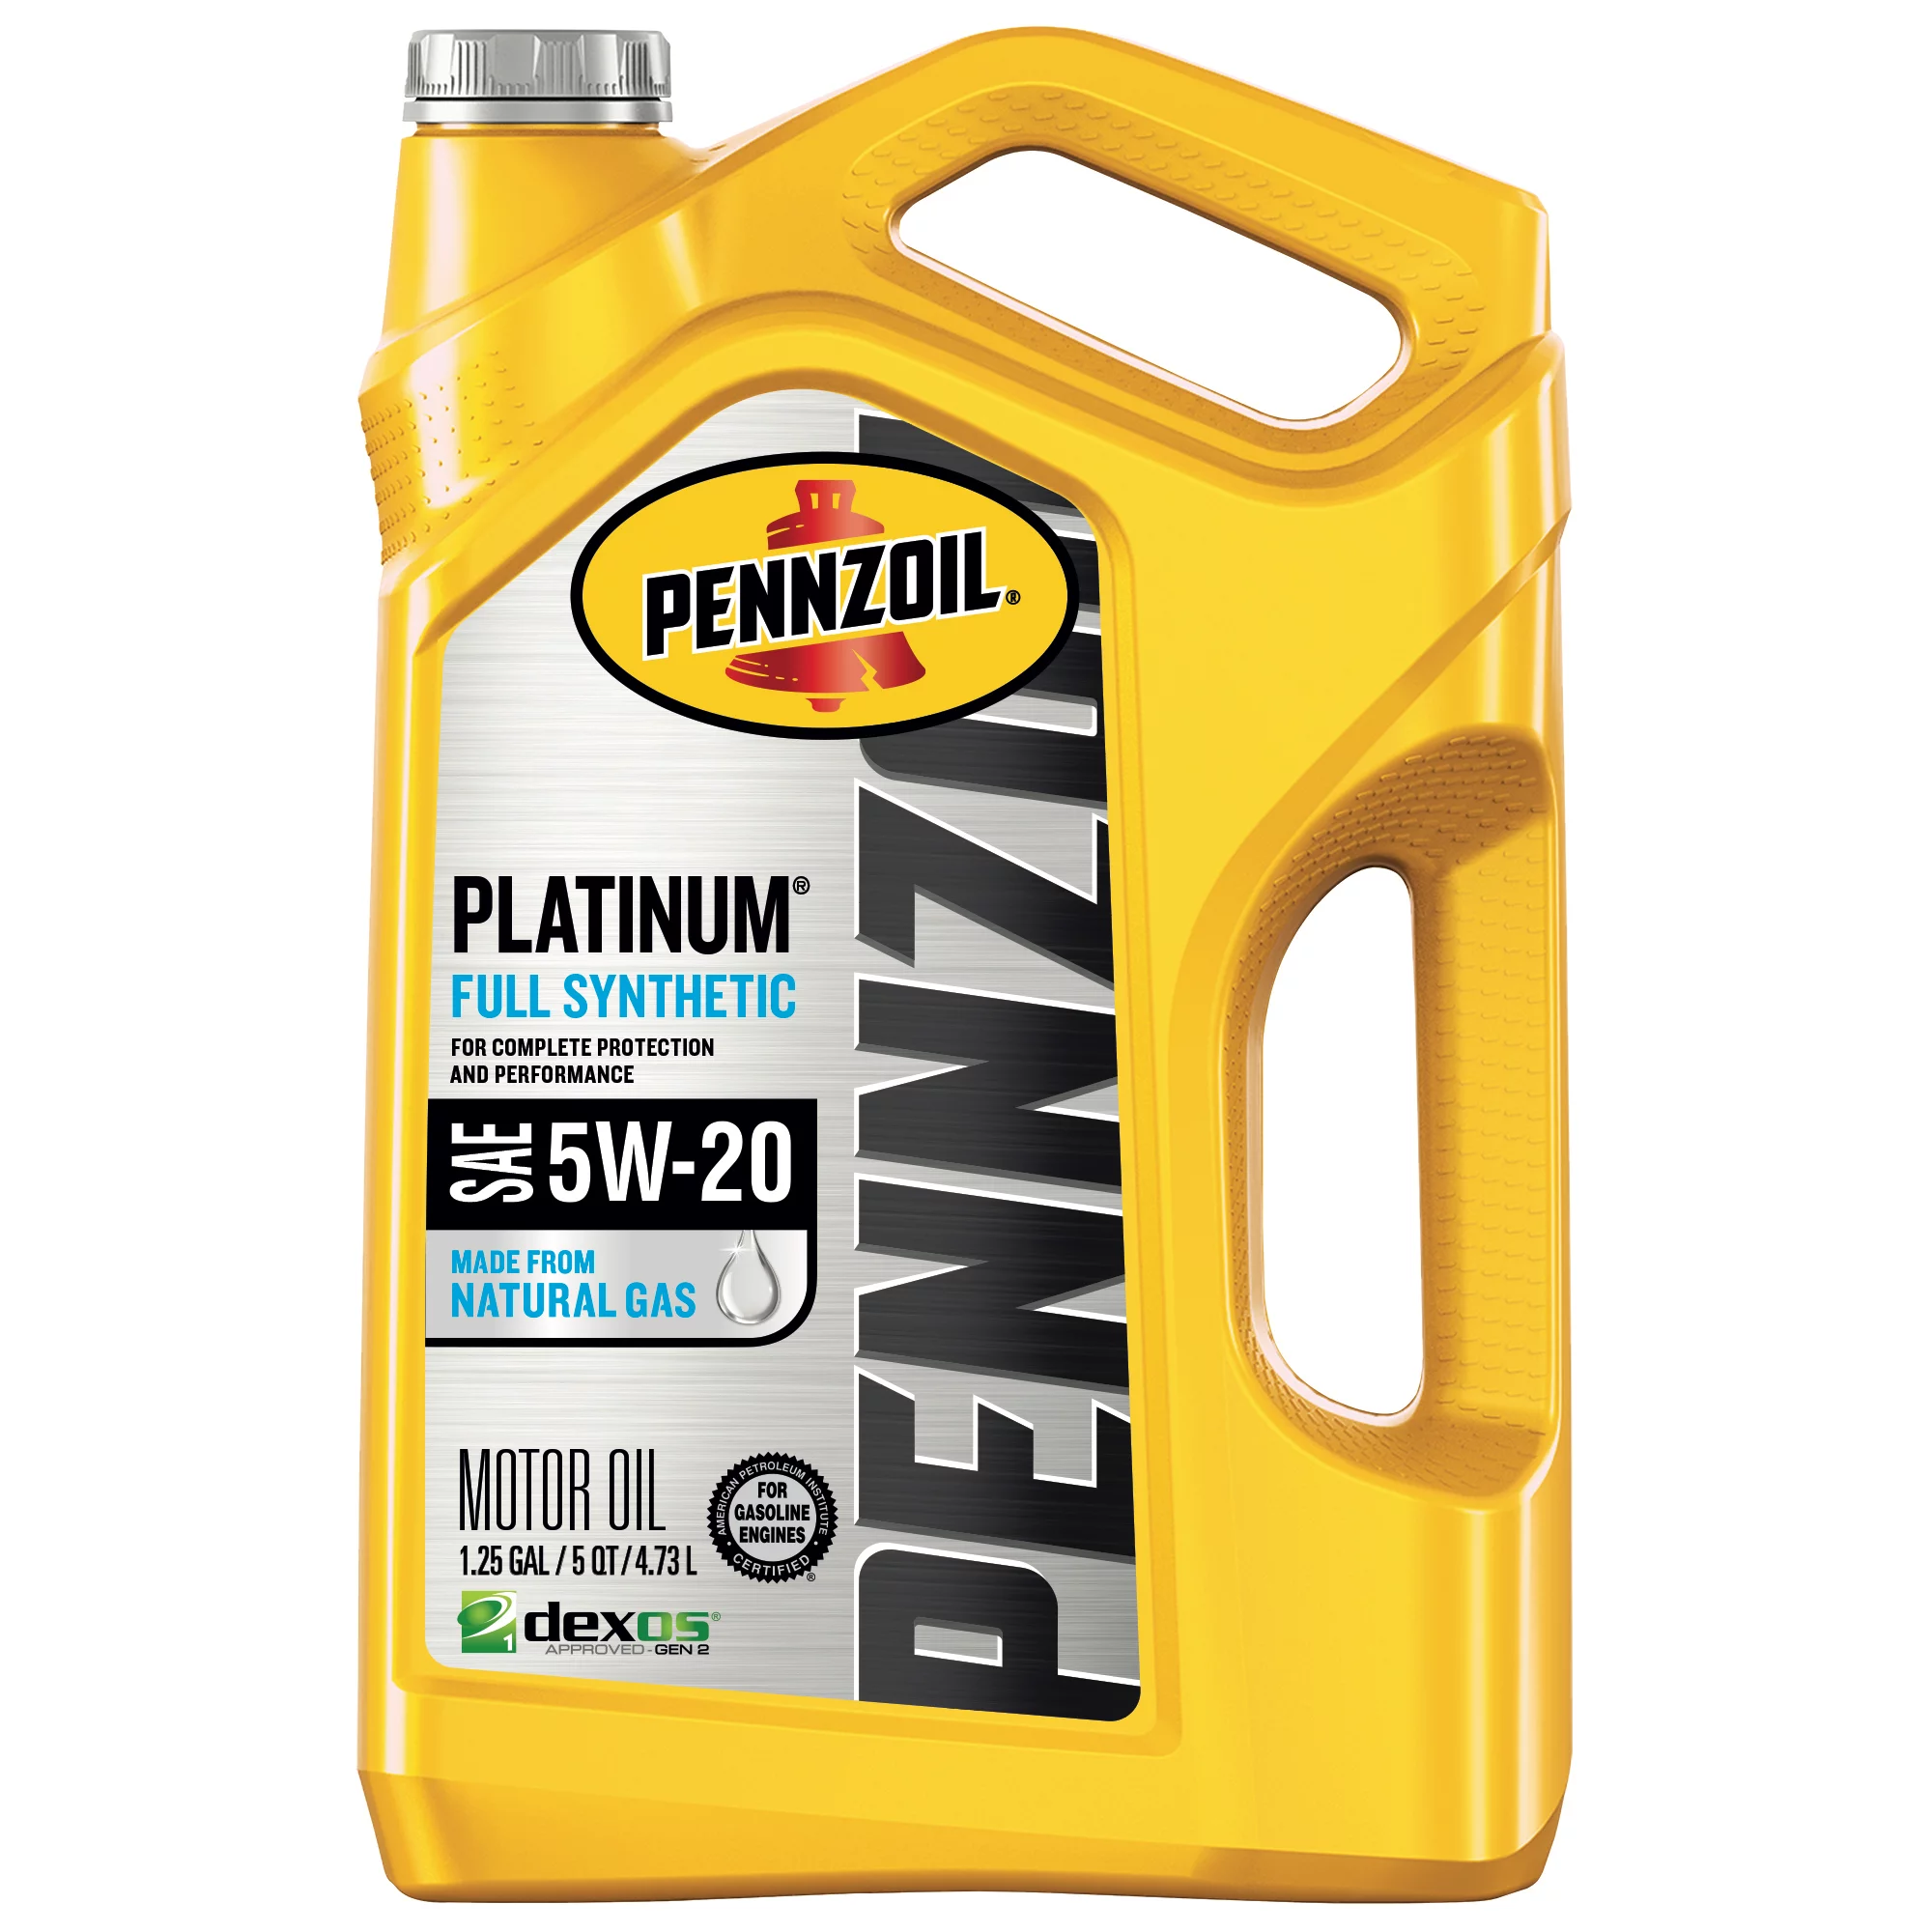 5W-20 Pennzoil Platinum Full Synthetic Motor Oil